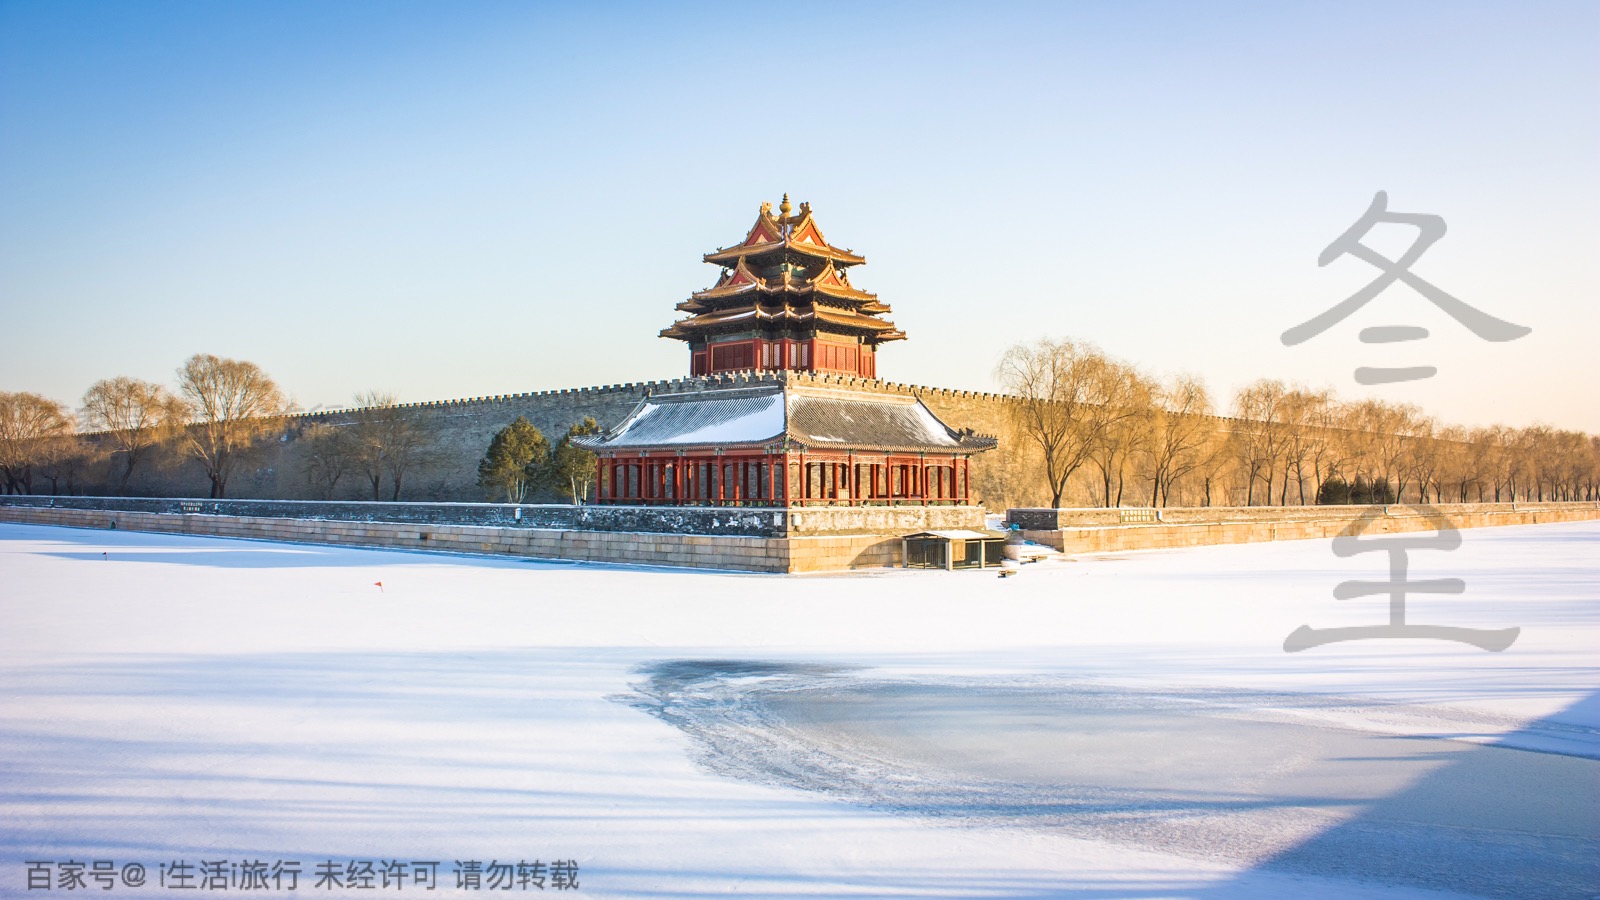 冬日,雪后的北京如此美丽